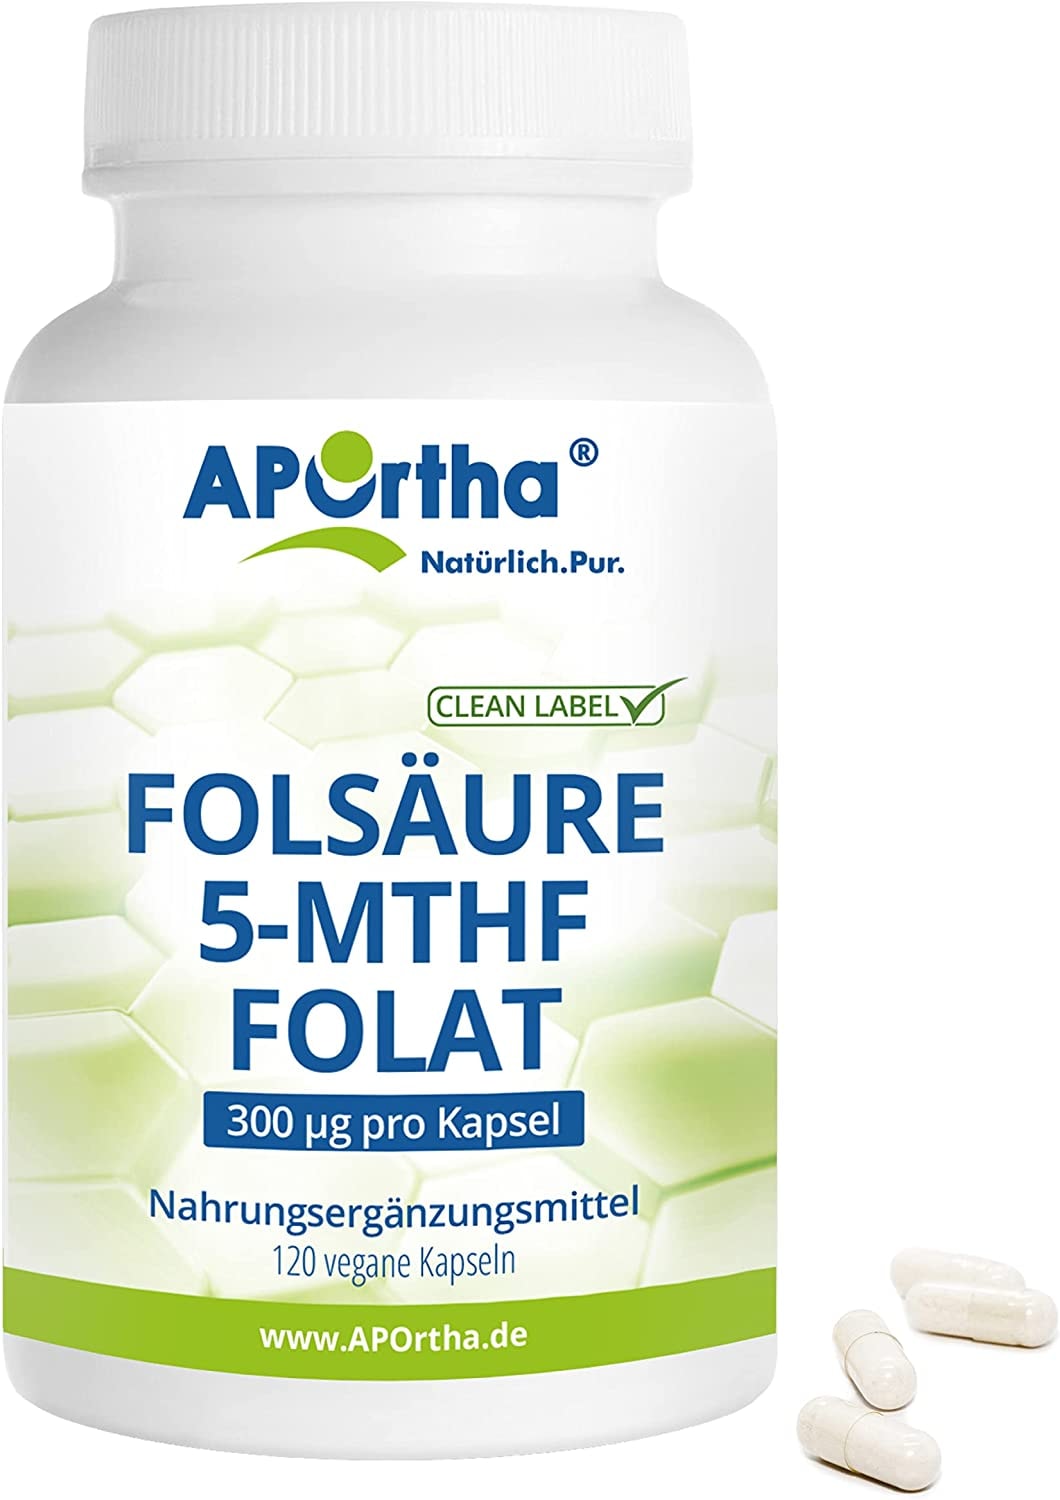 APOrtha® Folsäure 5-MTHF Folat, 120 vegane Kapseln, 300 µg aktivierte Folsäure pro Kapsel, hochdosiert und leicht zu schlucken, allergenfrei, vegan, glutenfrei, Alternative zu Tropfen und Tabletten